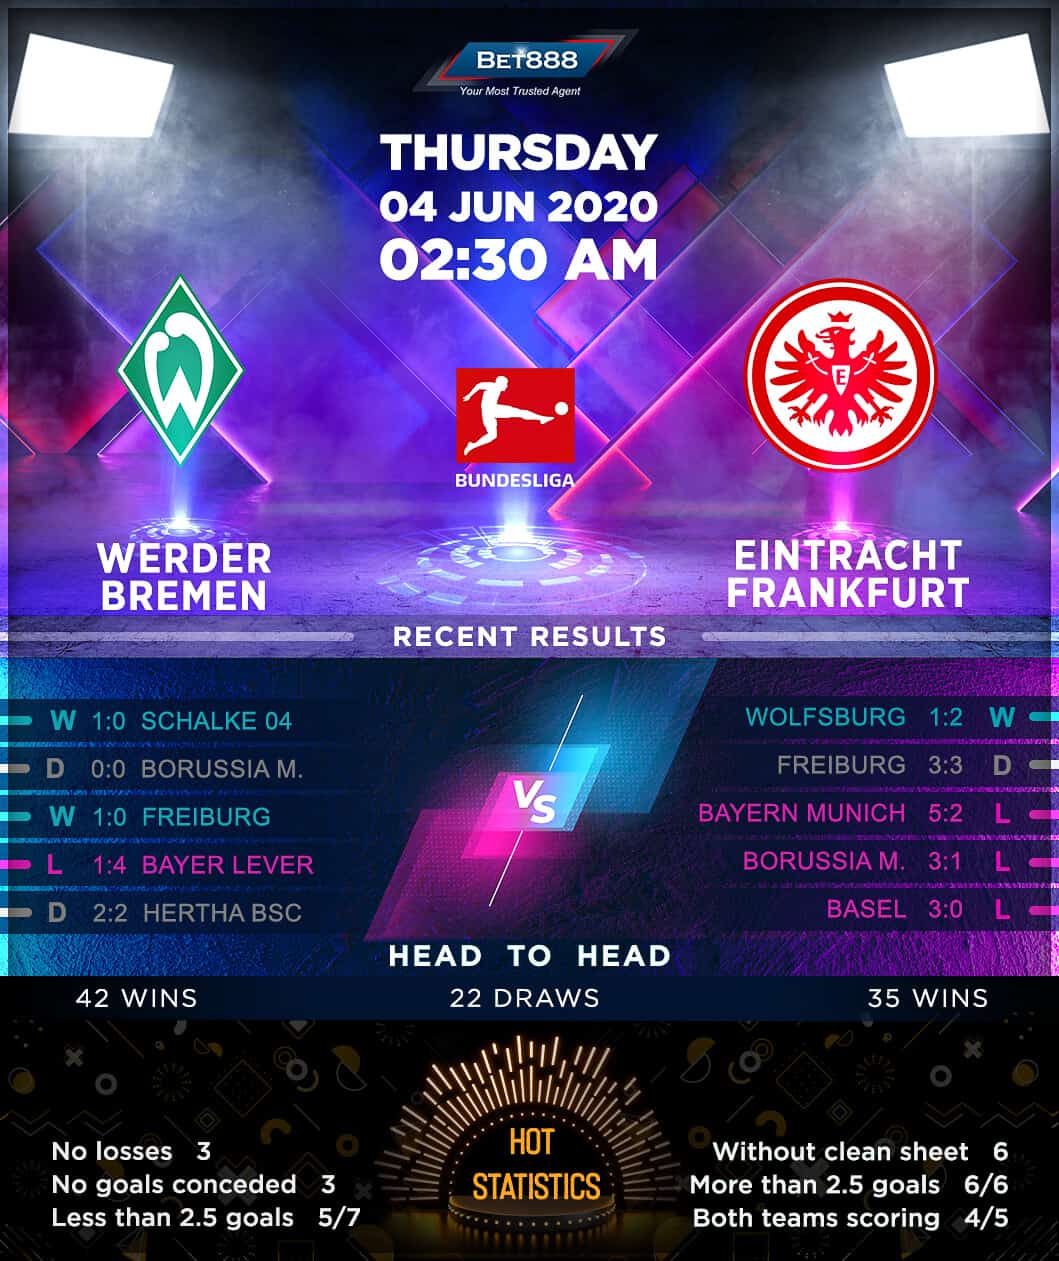 Werder Bremen vs Eintracht Frankfurt 04/06/20